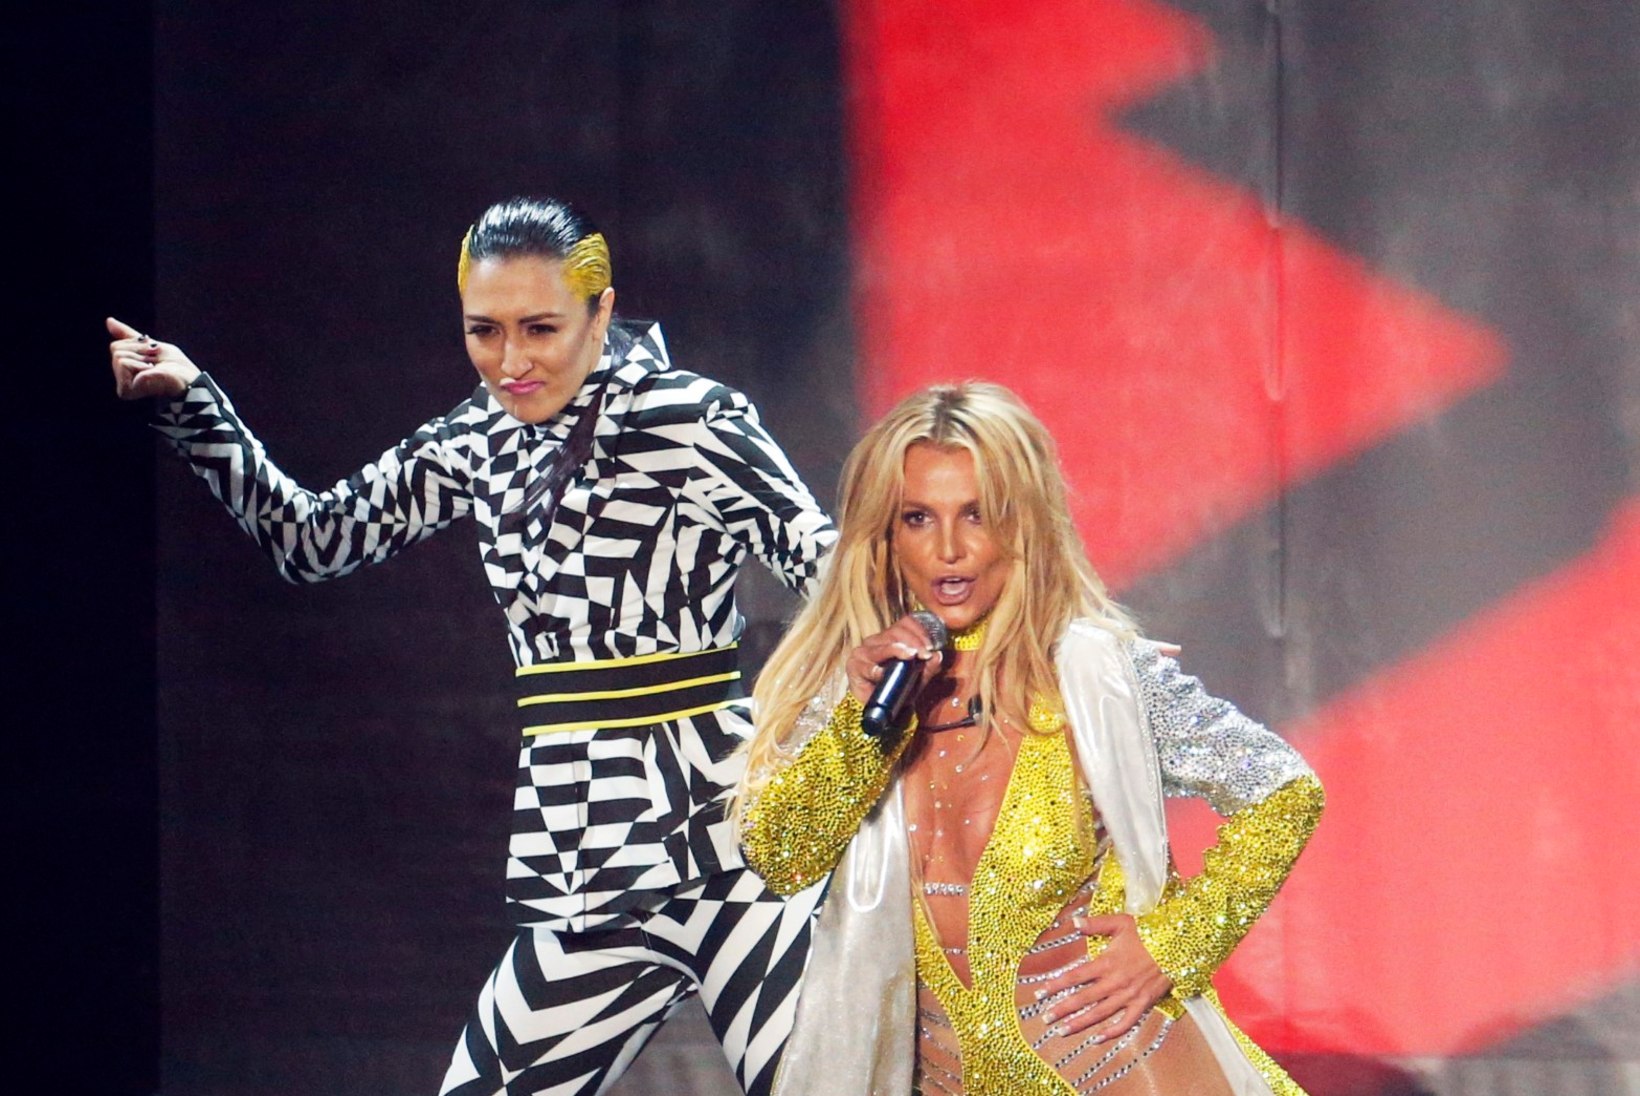 Britney eputab oma trimmis kehaga - aga kas selline riietus on ikka jõusaalis sünnis?!